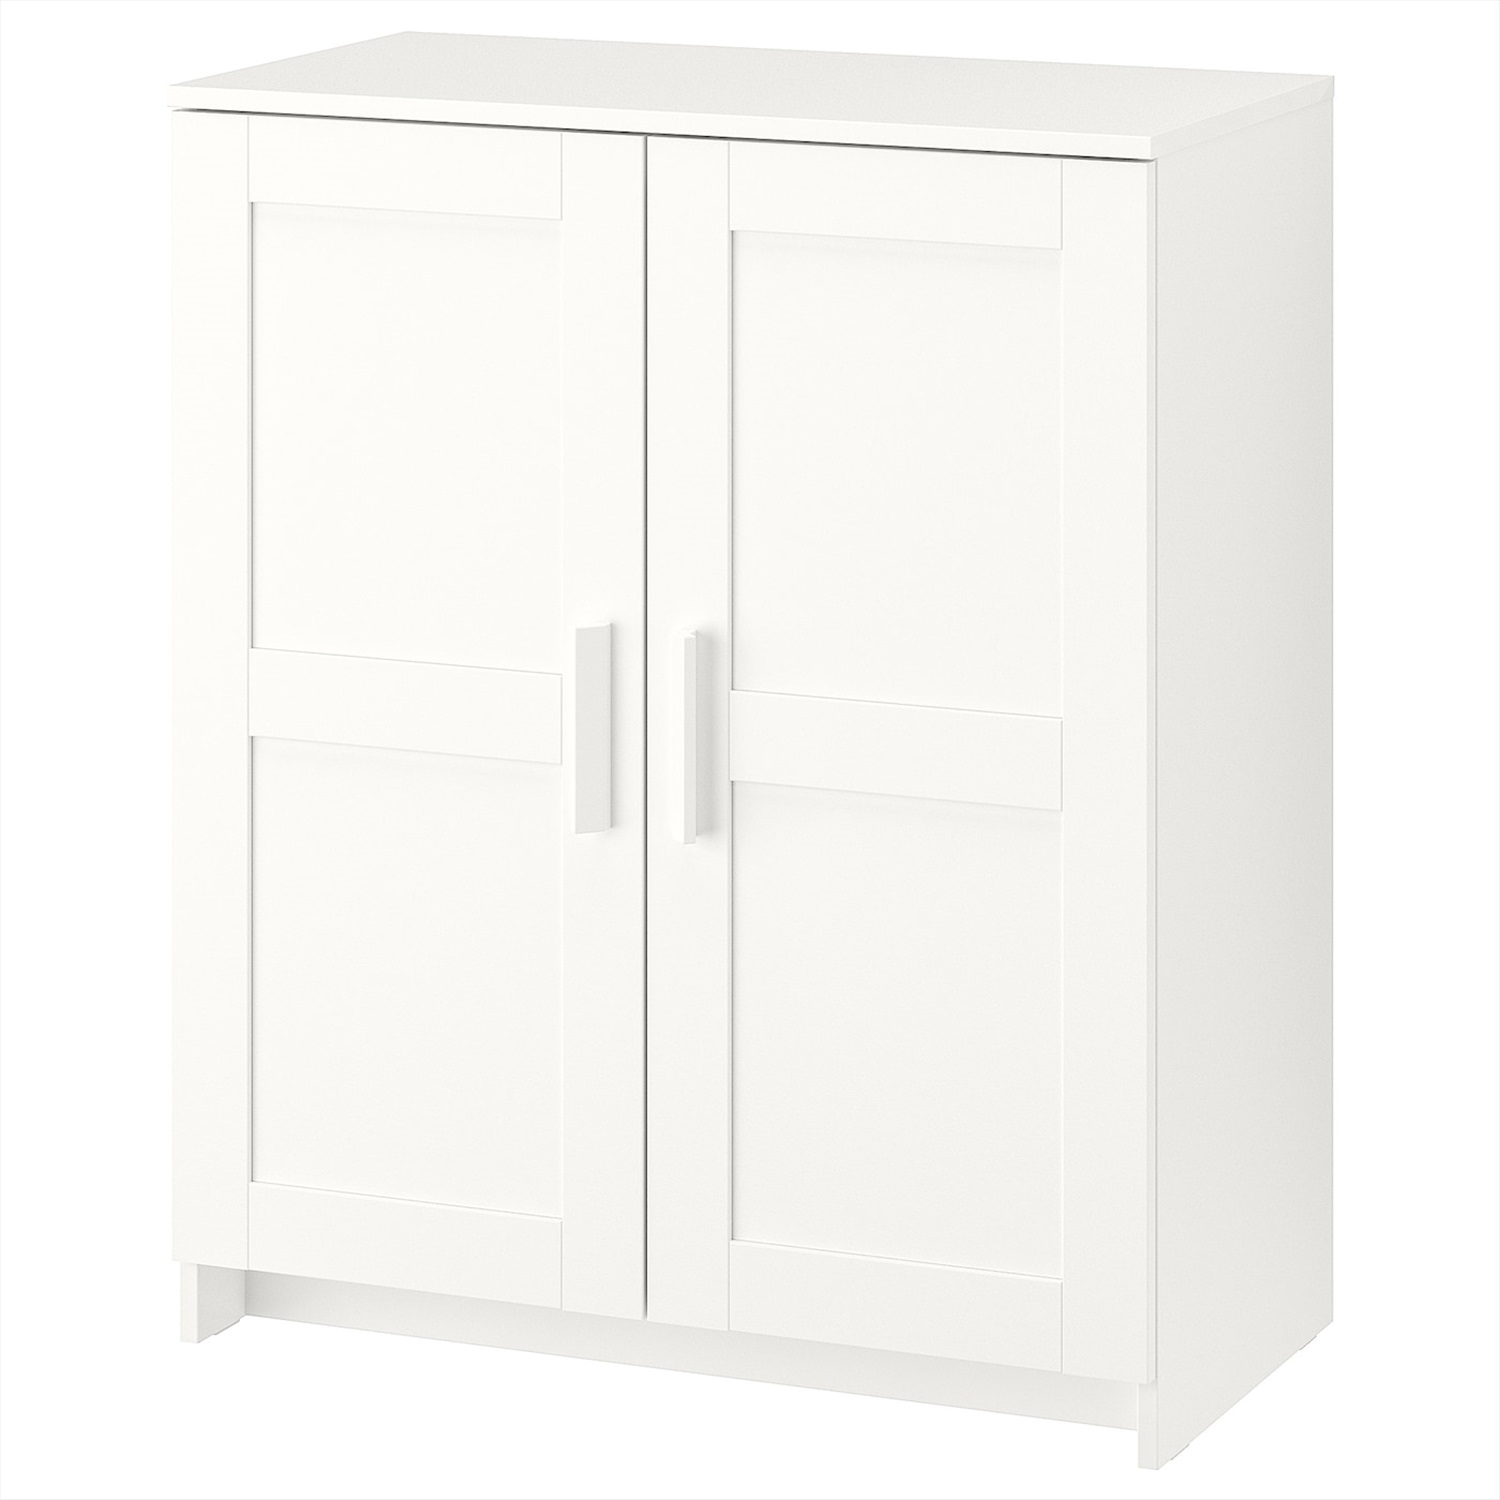 бримнэс шкаф с дверями белый78x95 см